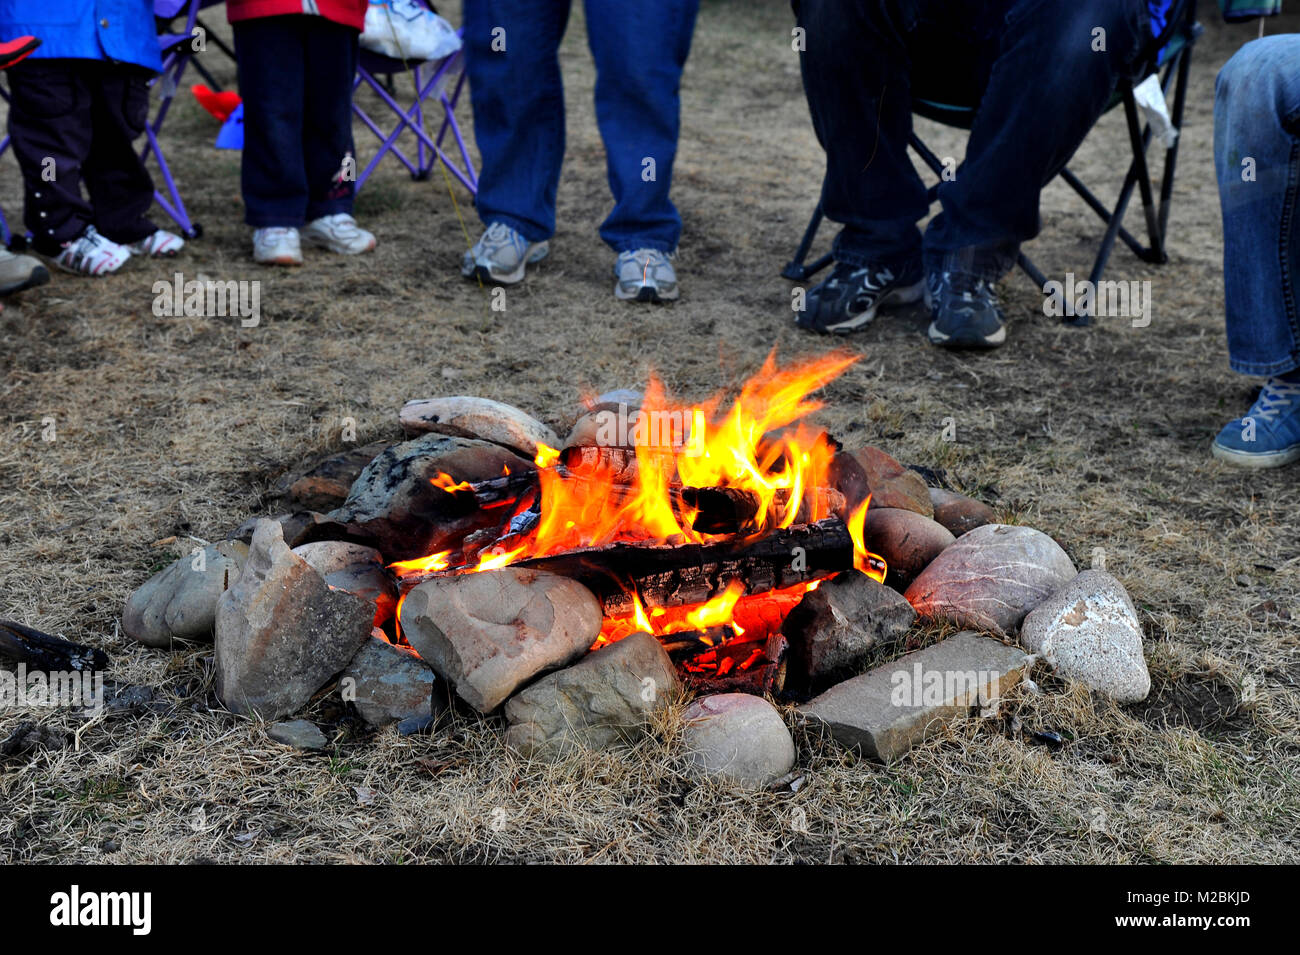 Un fuoco di campo nella sicurezza di un cerchio di pietra con persone raccolte intorno nelle zone rurali di Alberta in Canada. Foto Stock